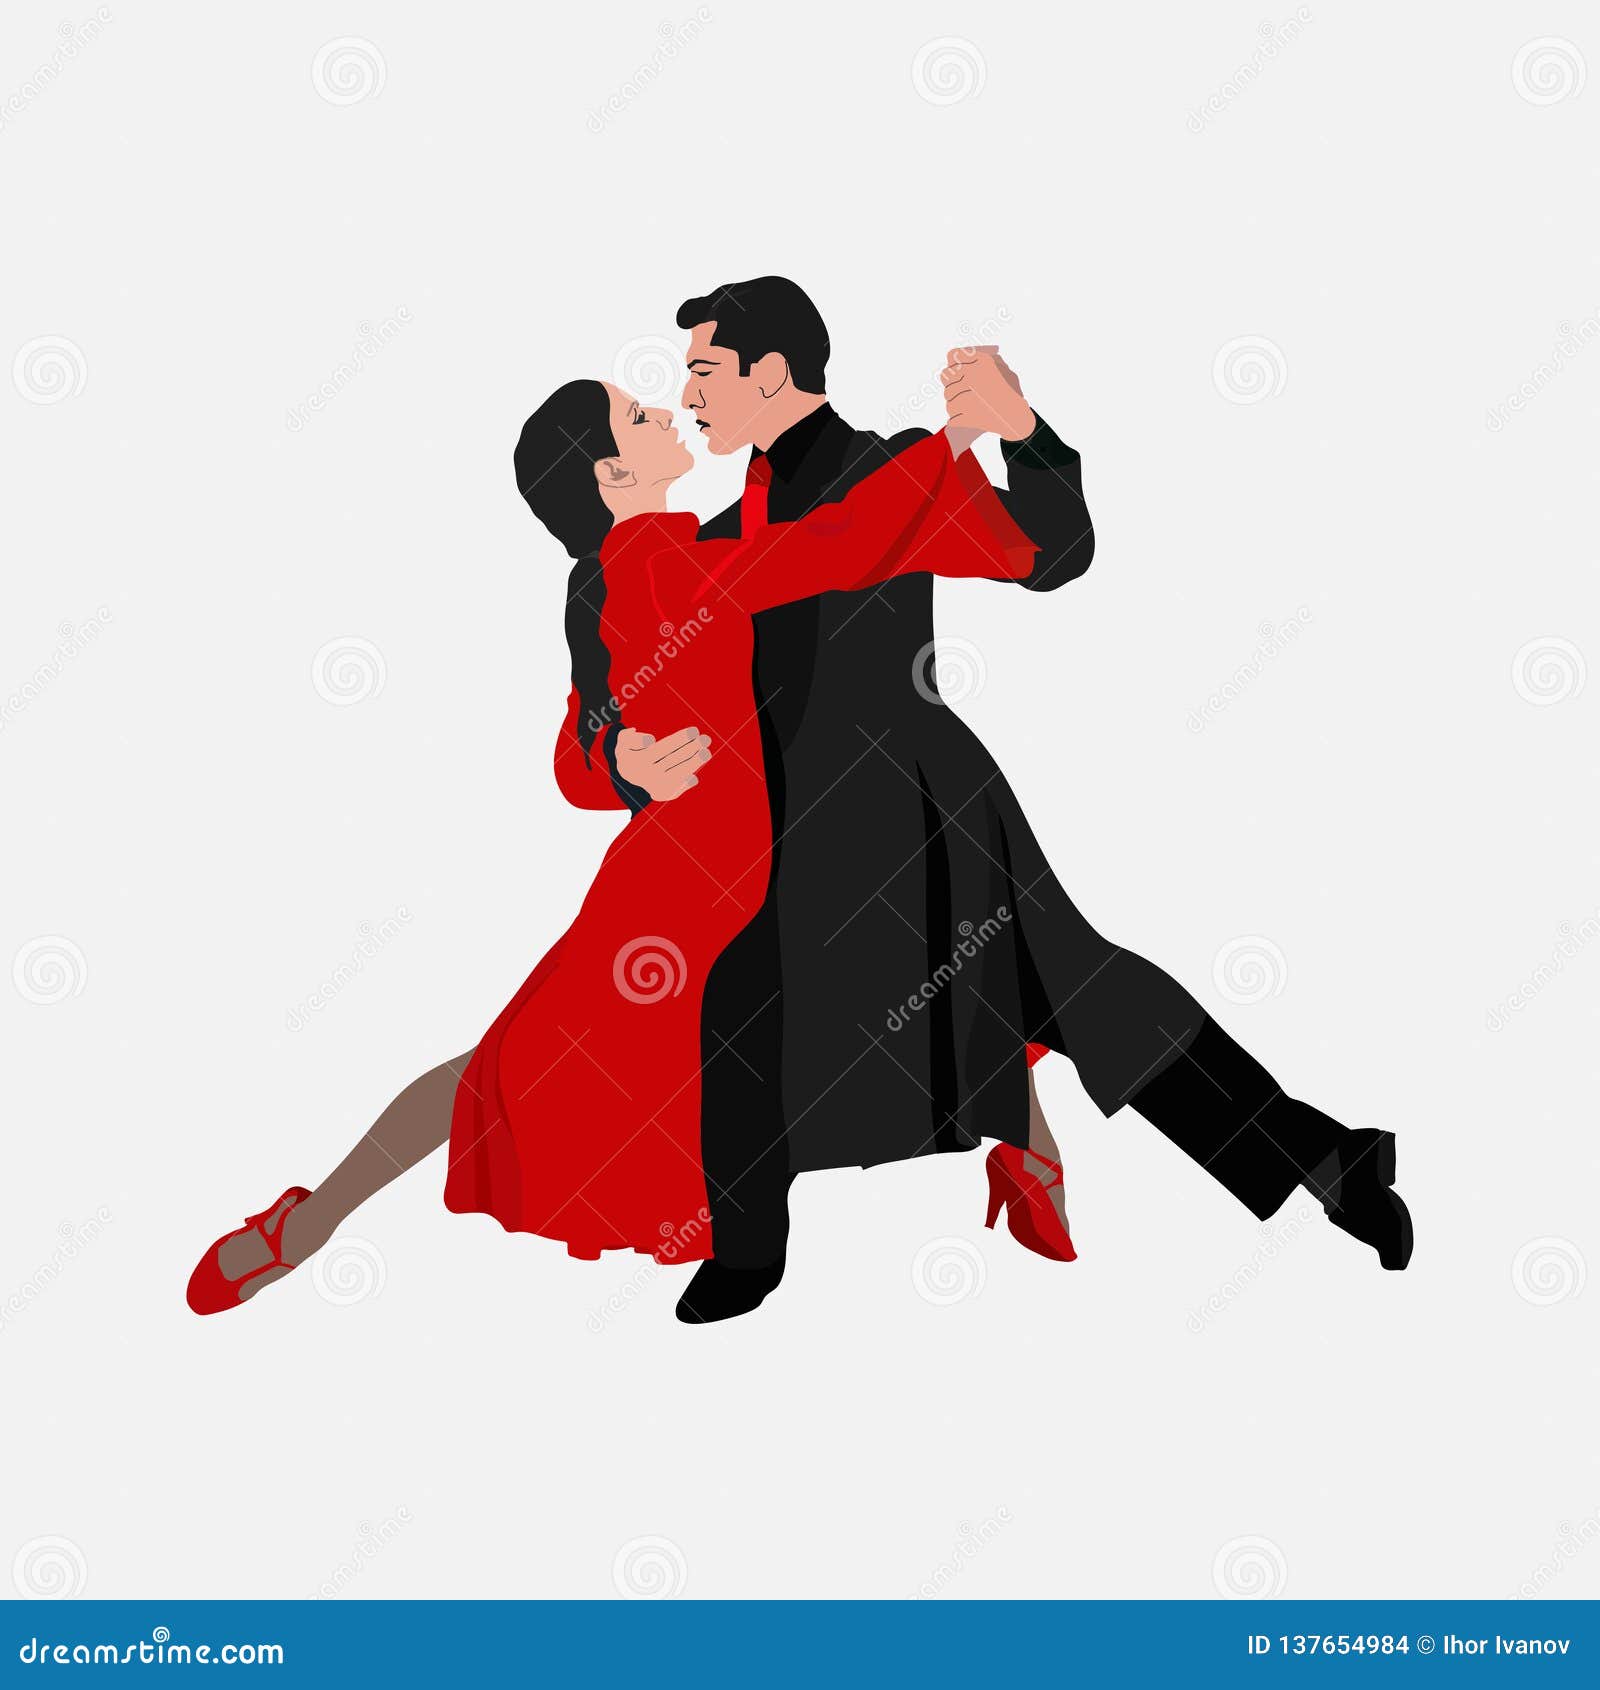 Mentor Walter Cunningham no se dio cuenta Danza Del Tango, Baile De Los Pares El Tango, Danza Del Salón De Baile-deporte  Stock de ilustración - Ilustración de conceptos, etnicidad: 137654984